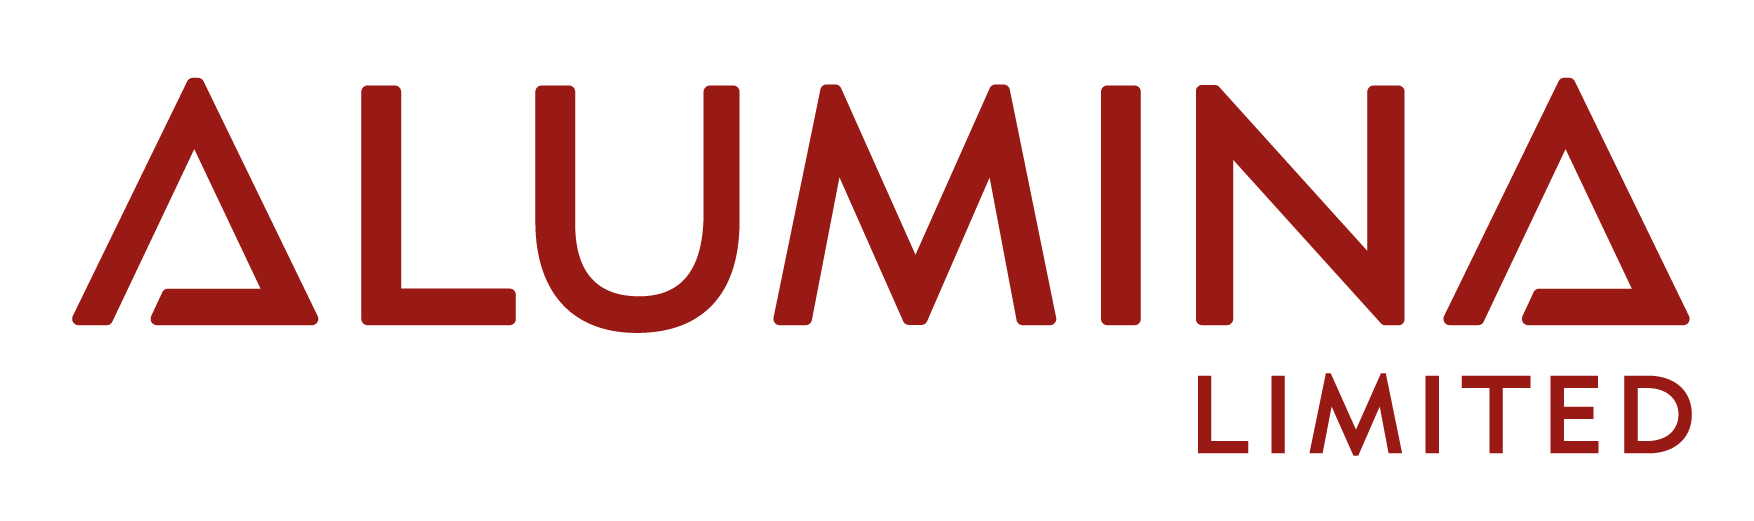 Alumina Limited Logo